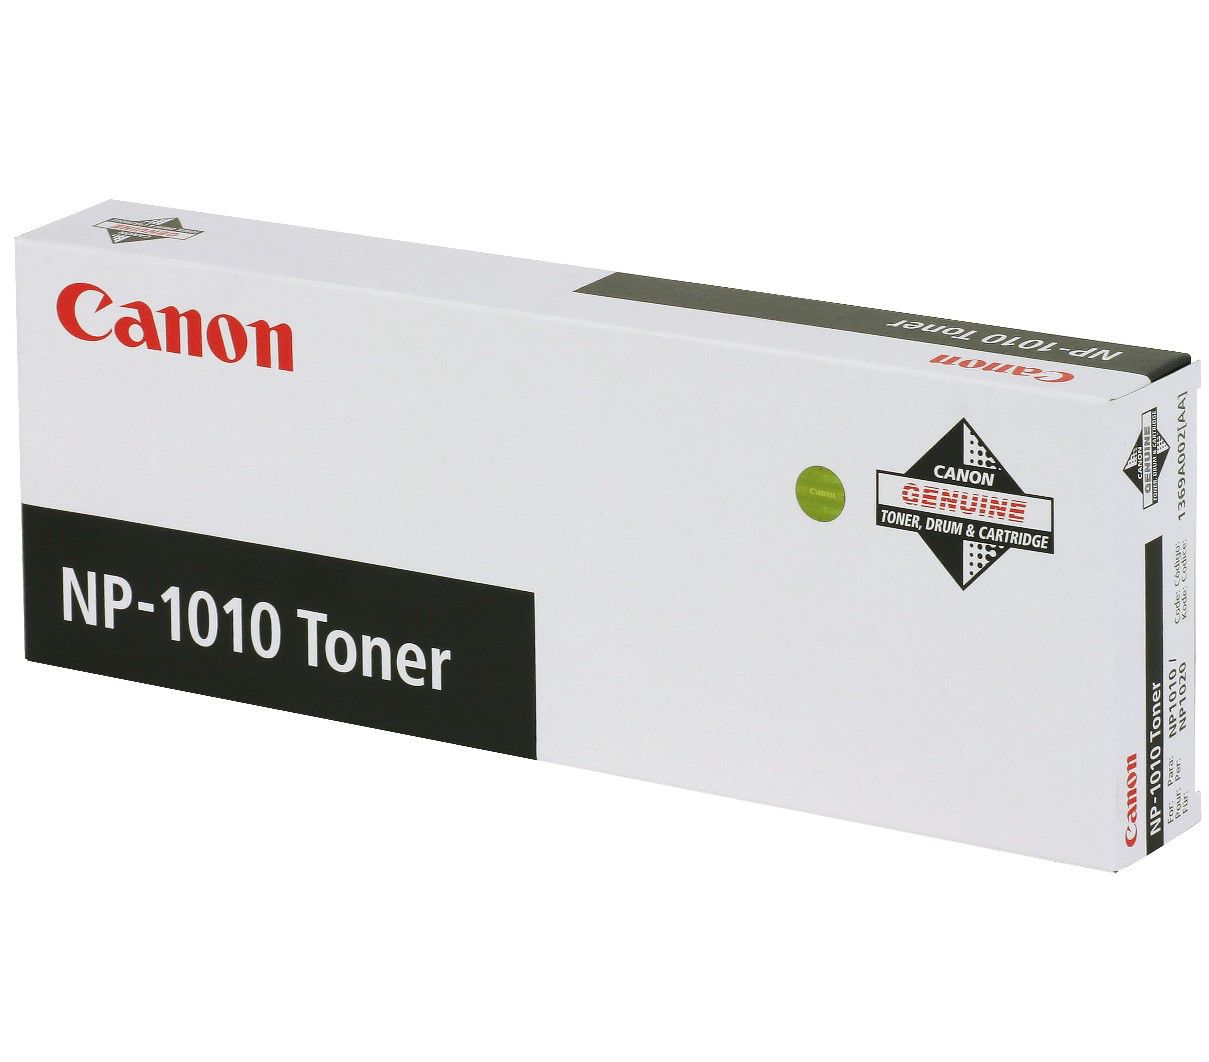 Canon NP-1010 Toner cartridge 2 stuk(s) Origineel Zwart